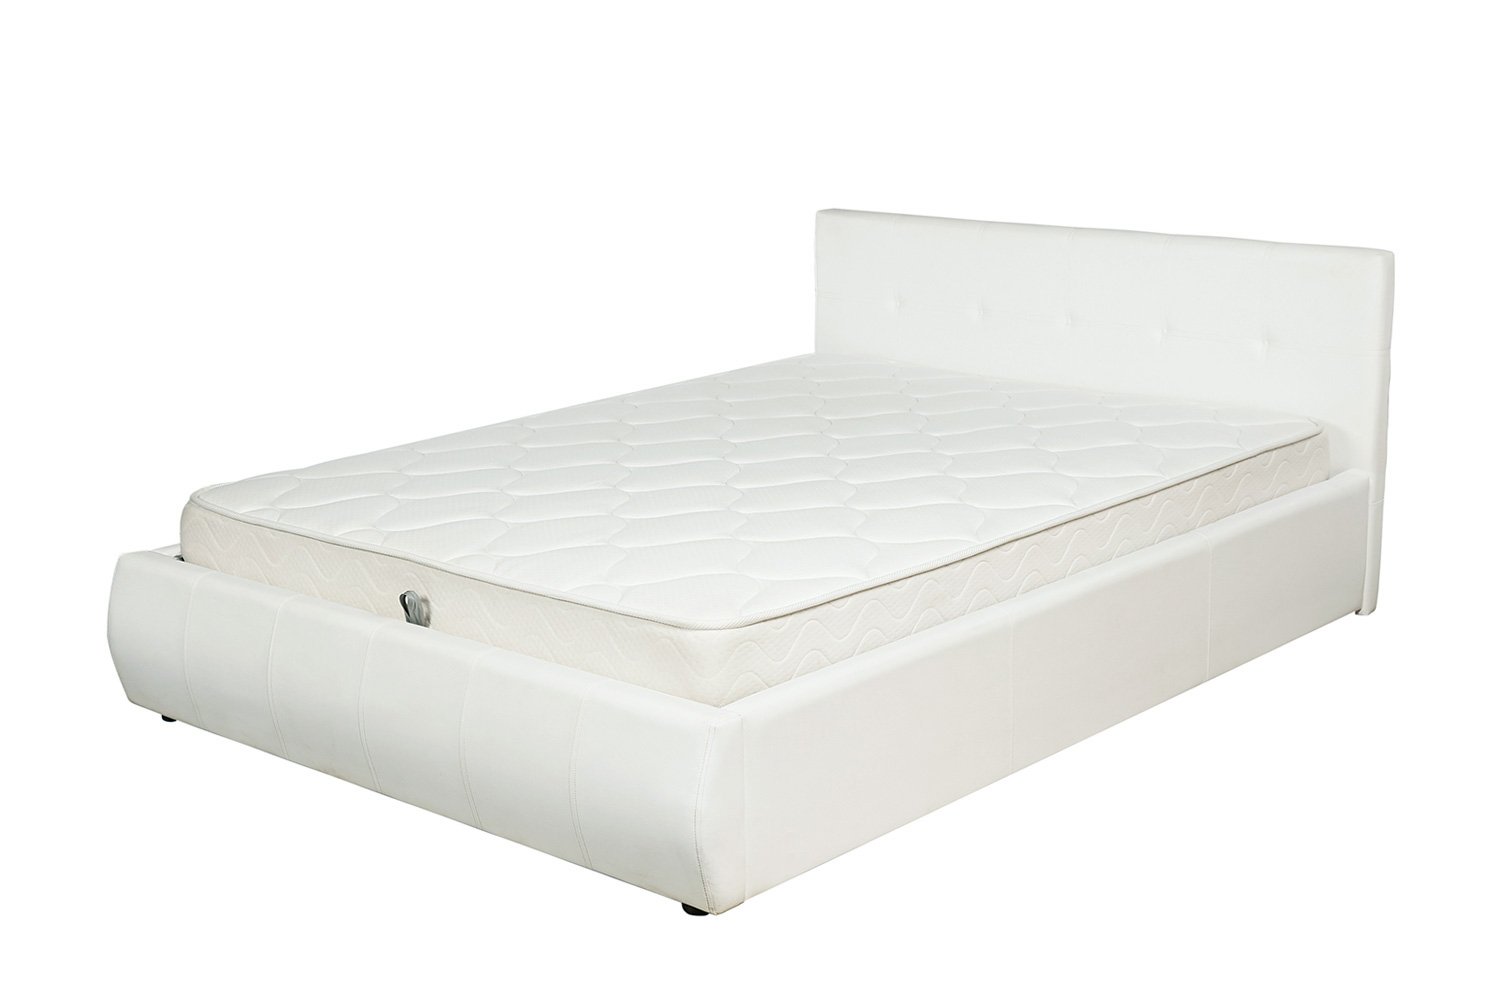 Производители кроватей 160х200 купить. Кровать Mila с подъемным механизмом хофф. Кровать хофф белая 160 200. Хофф кровати двуспальные 160х200.